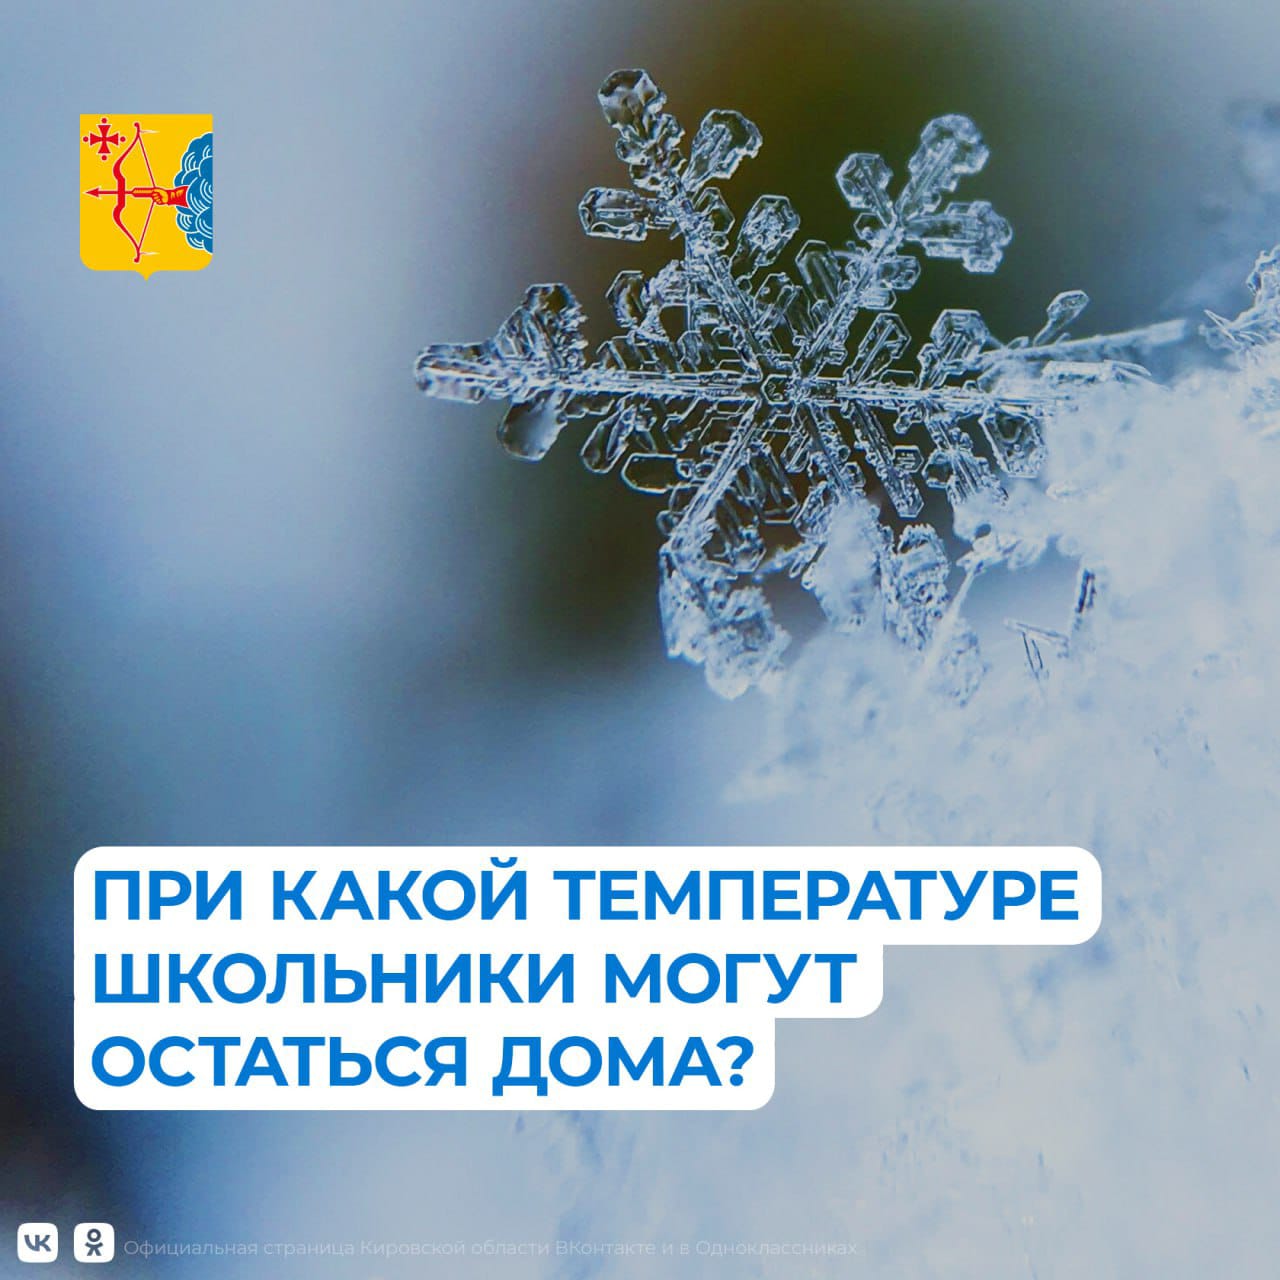 Режим работы МБОУ ООШ № 33 г. Кирова в условиях низкой температуры наружного воздуха в зимний период.